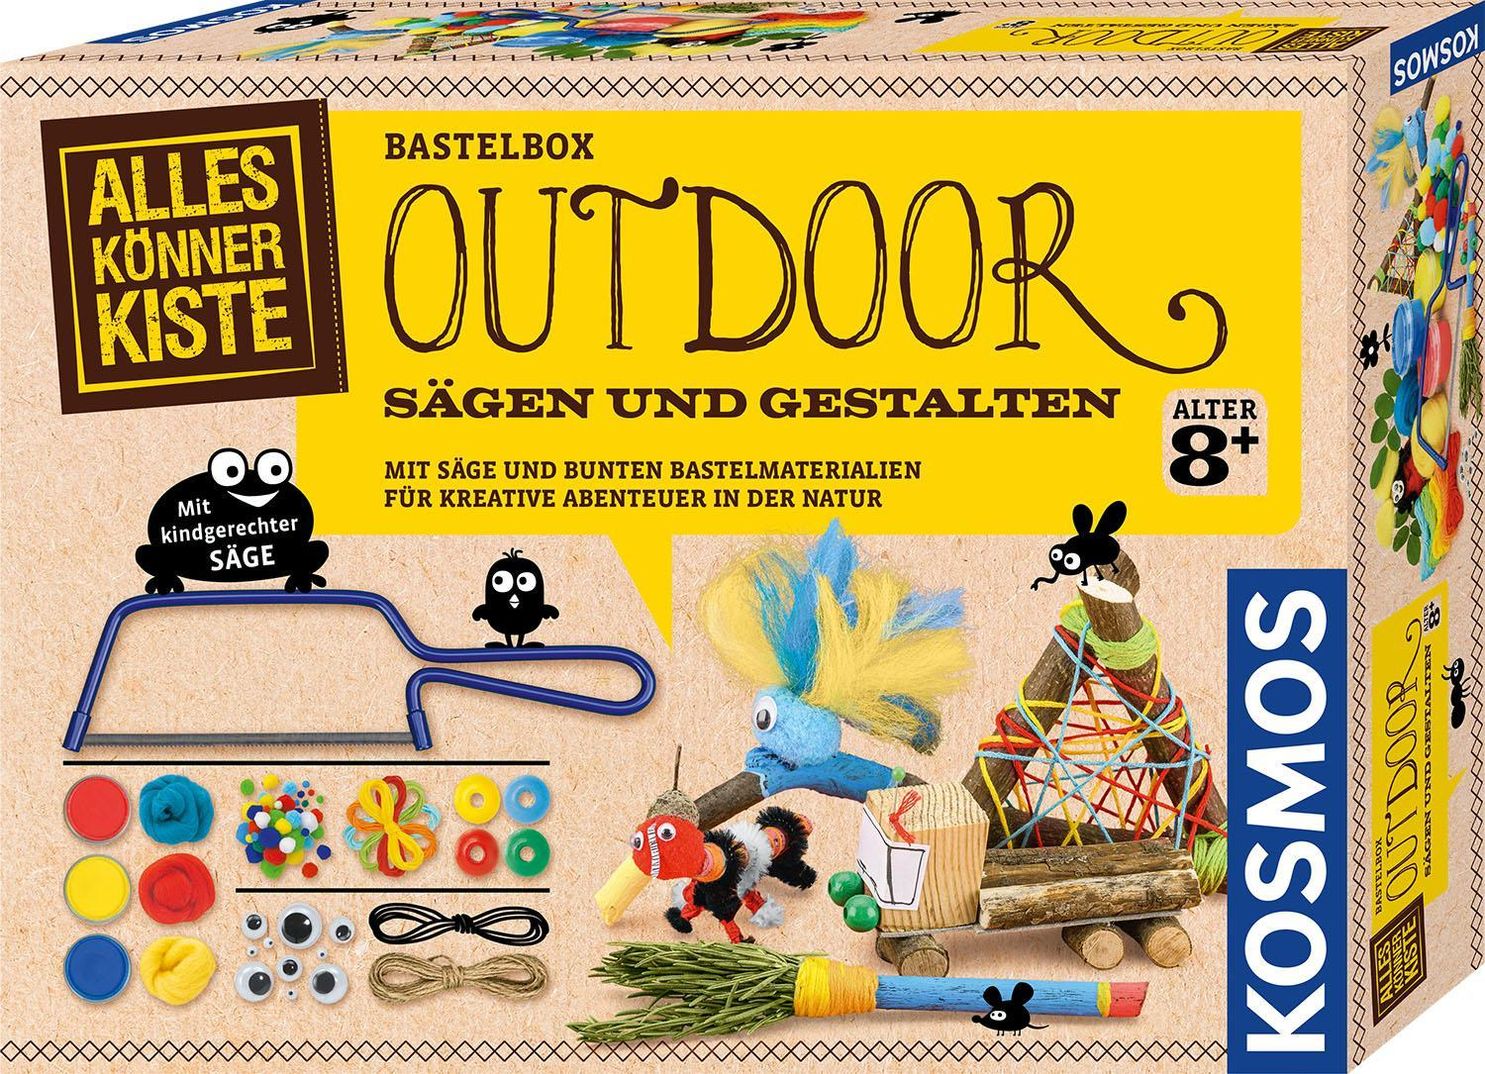 Bastel-Box: Alles Könner Kiste – Outdoor Sägen und Gestalten | Weltbild.at